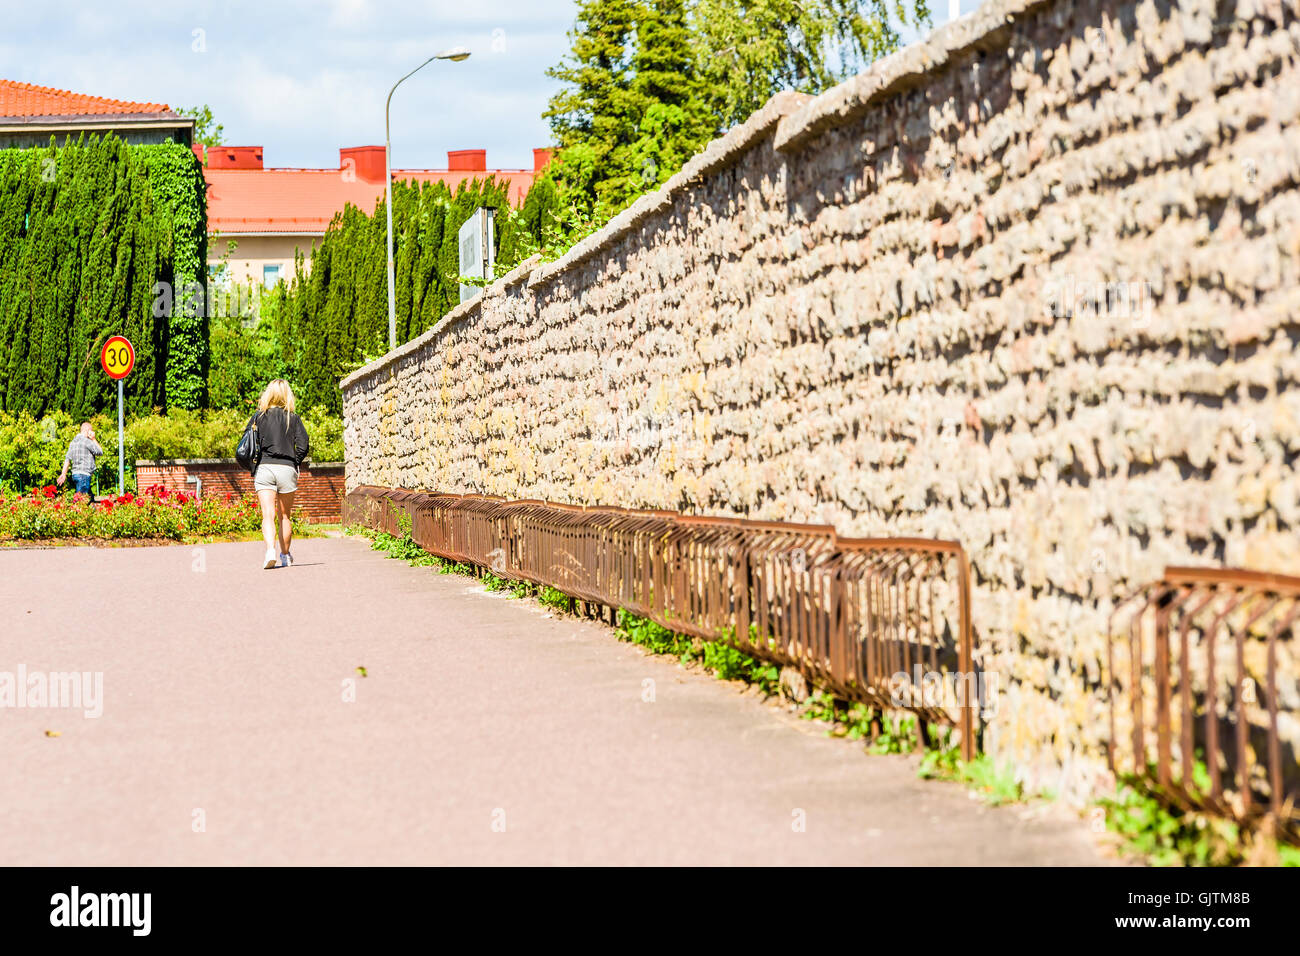 Kalmar, Suecia - Agosto 10, 2016: la mujer adulta joven camina lejos de usted a lo largo de una pared de piedra con bastidores de bicicletas vacías o soportes. Foto de stock